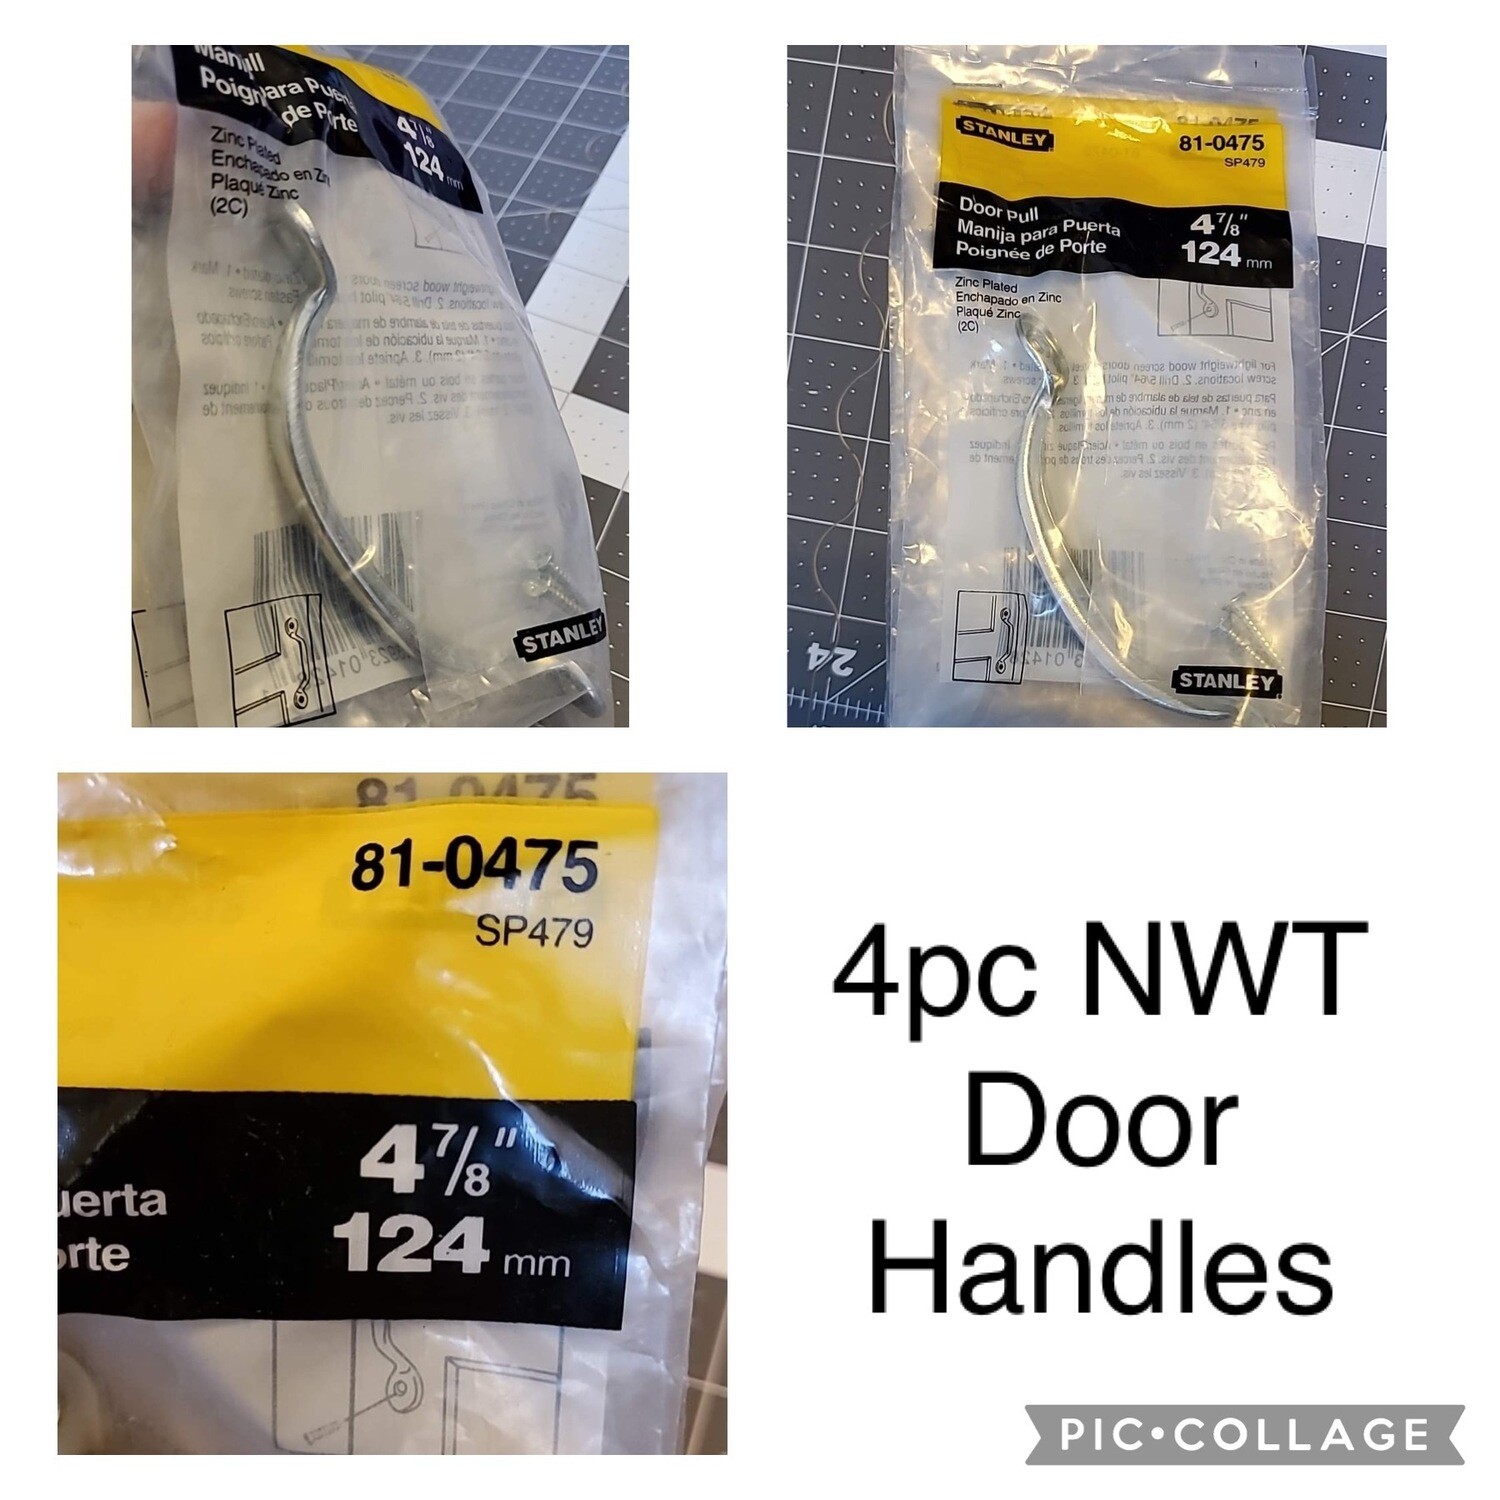 4pc NWT Door Handles